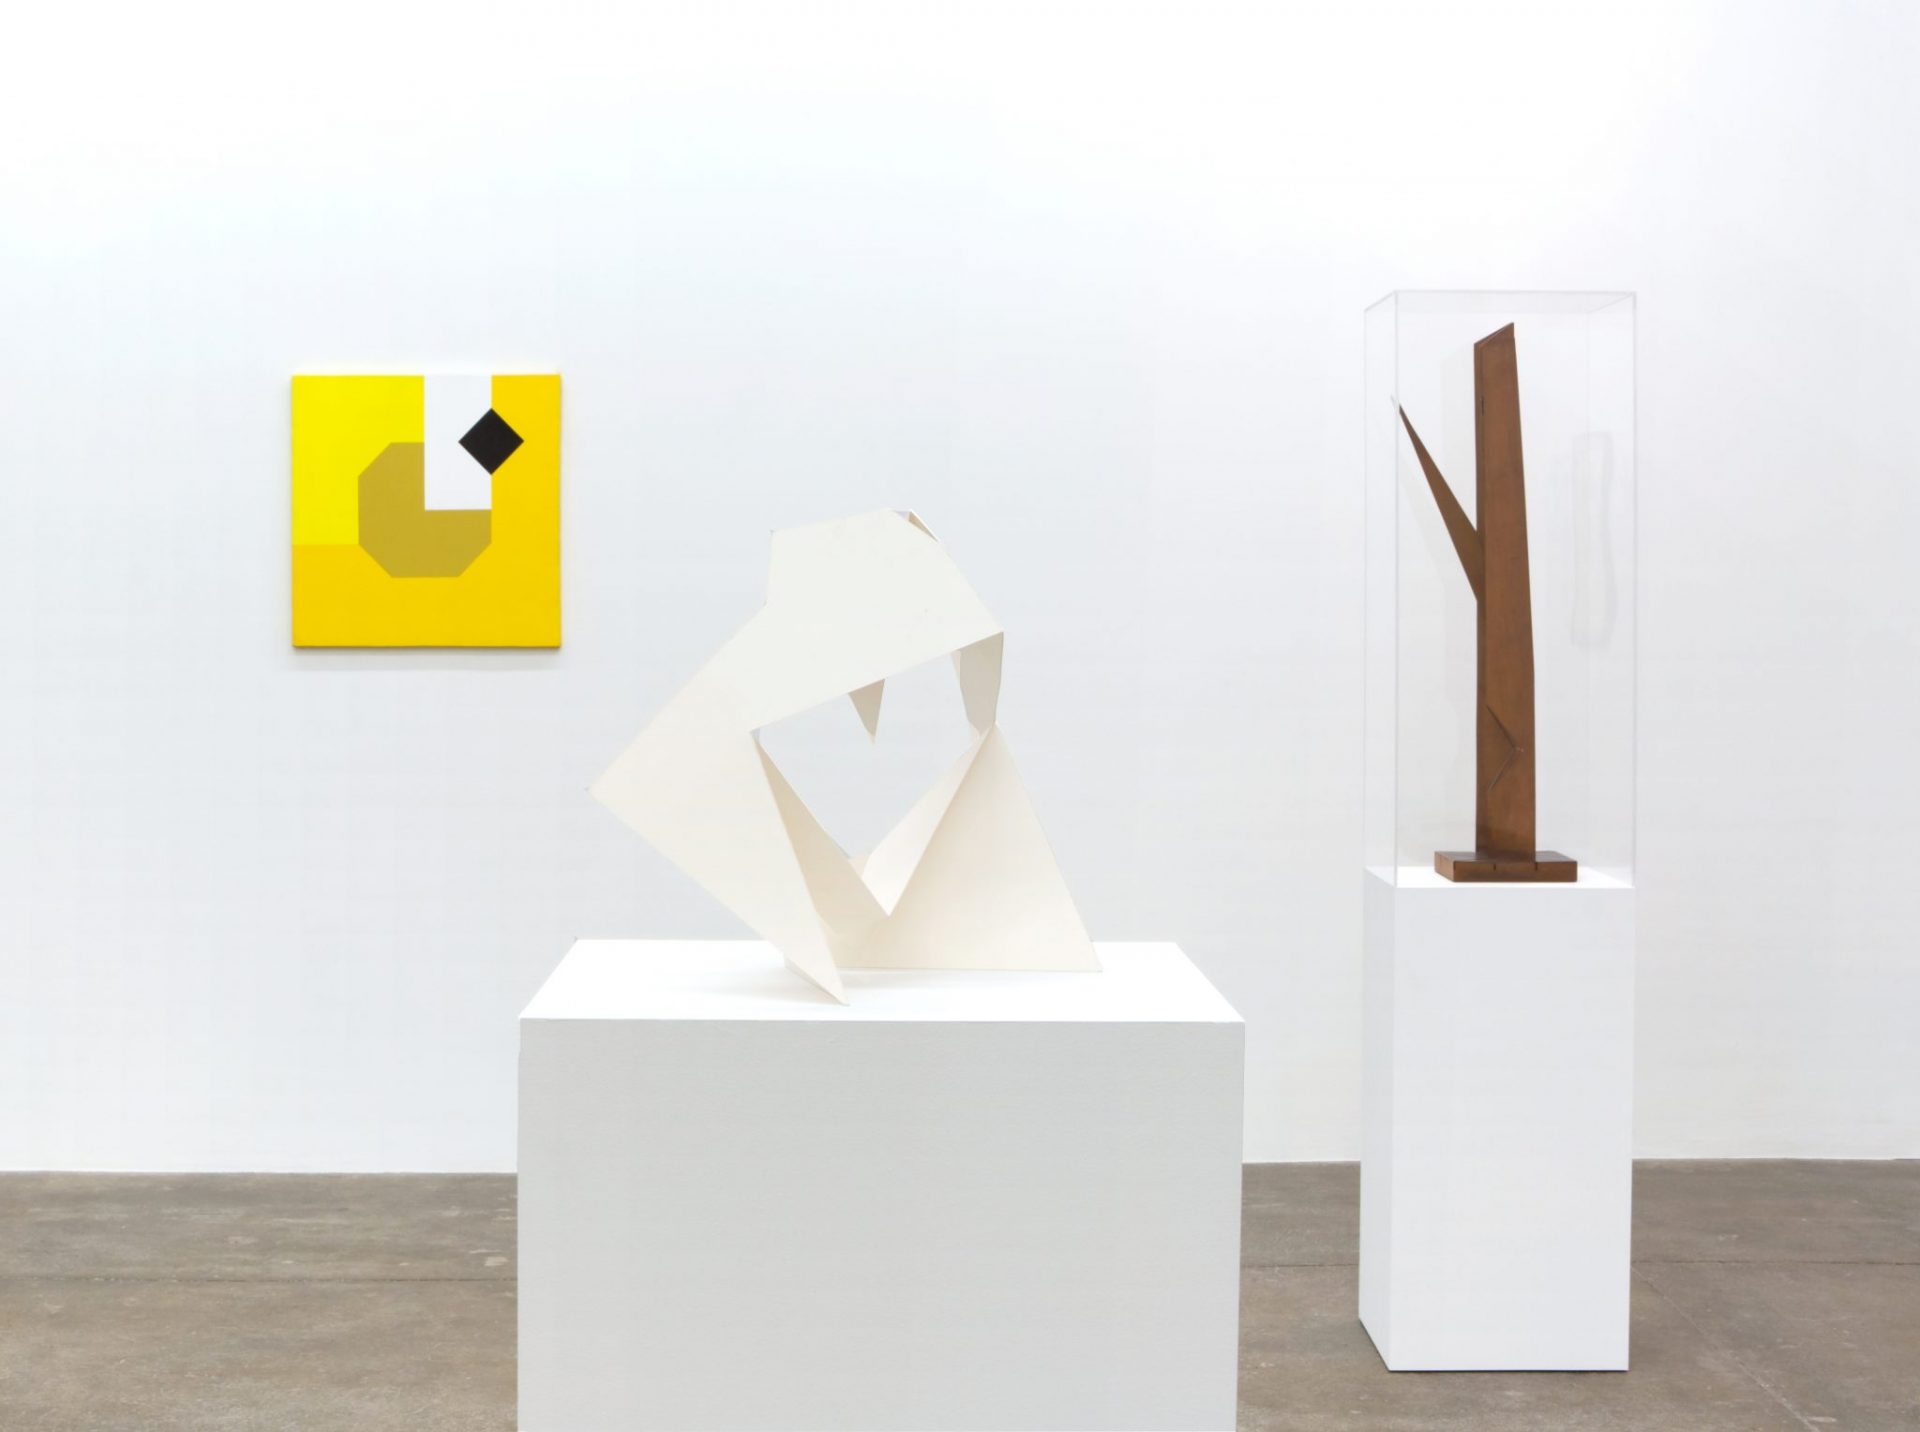 Explore Bruno Munari and his singular modern art • kaufmann repetto